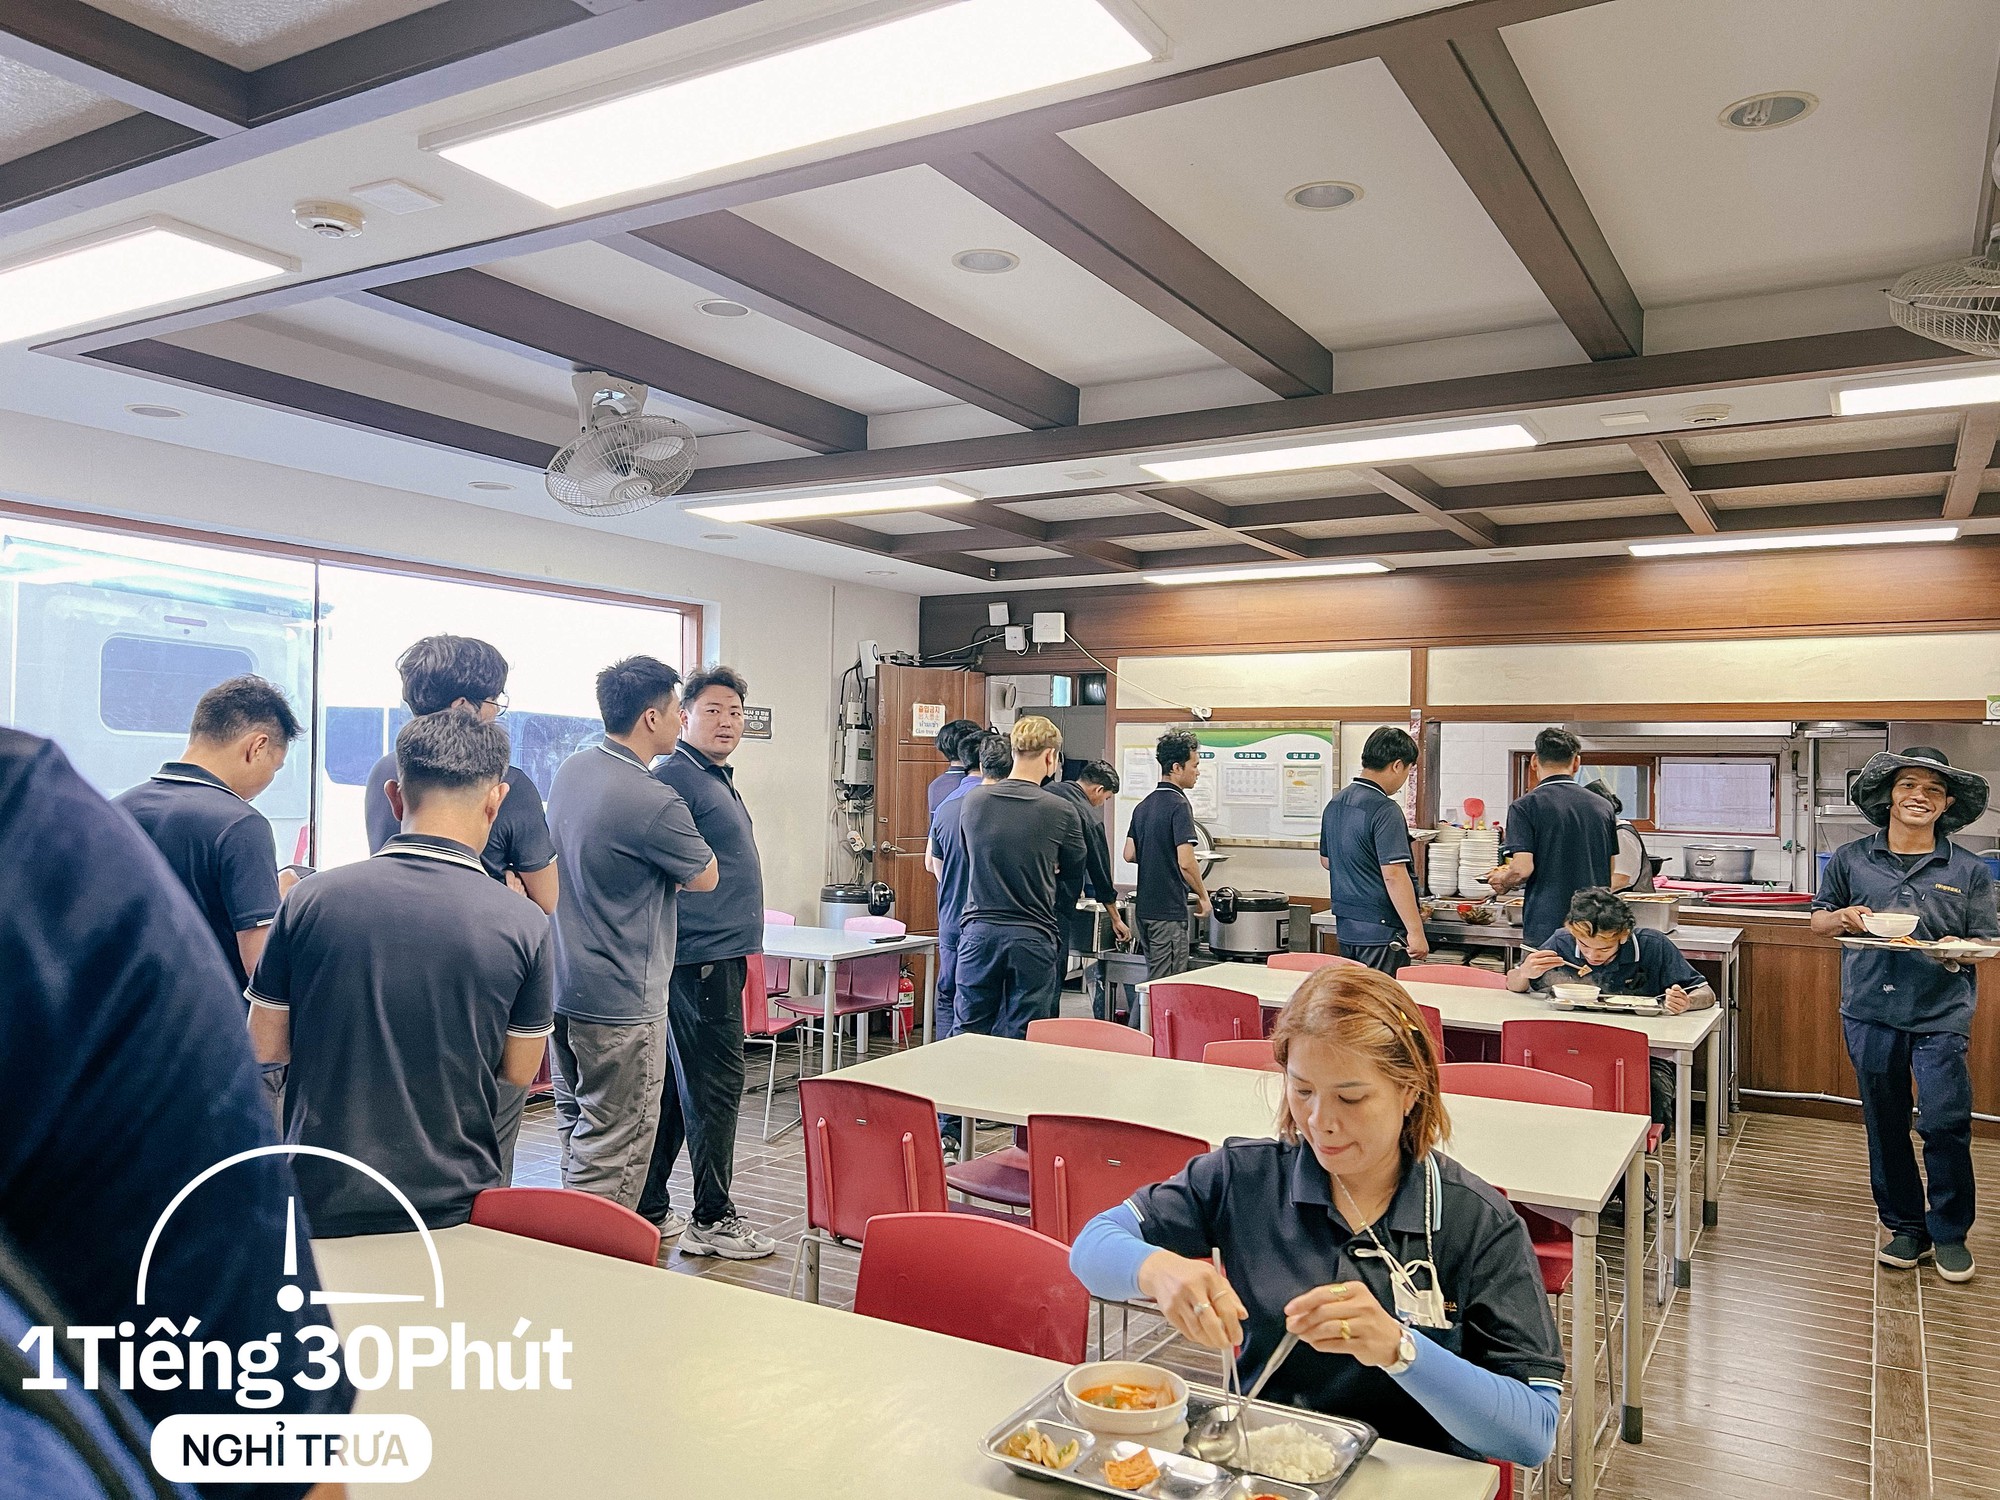 Nhân viên ở Hàn Quốc tiết lộ sự thật bữa cơm trưa tại công ty: ''Người ăn áp lực chẳng kém người nấu'' - ảnh 2